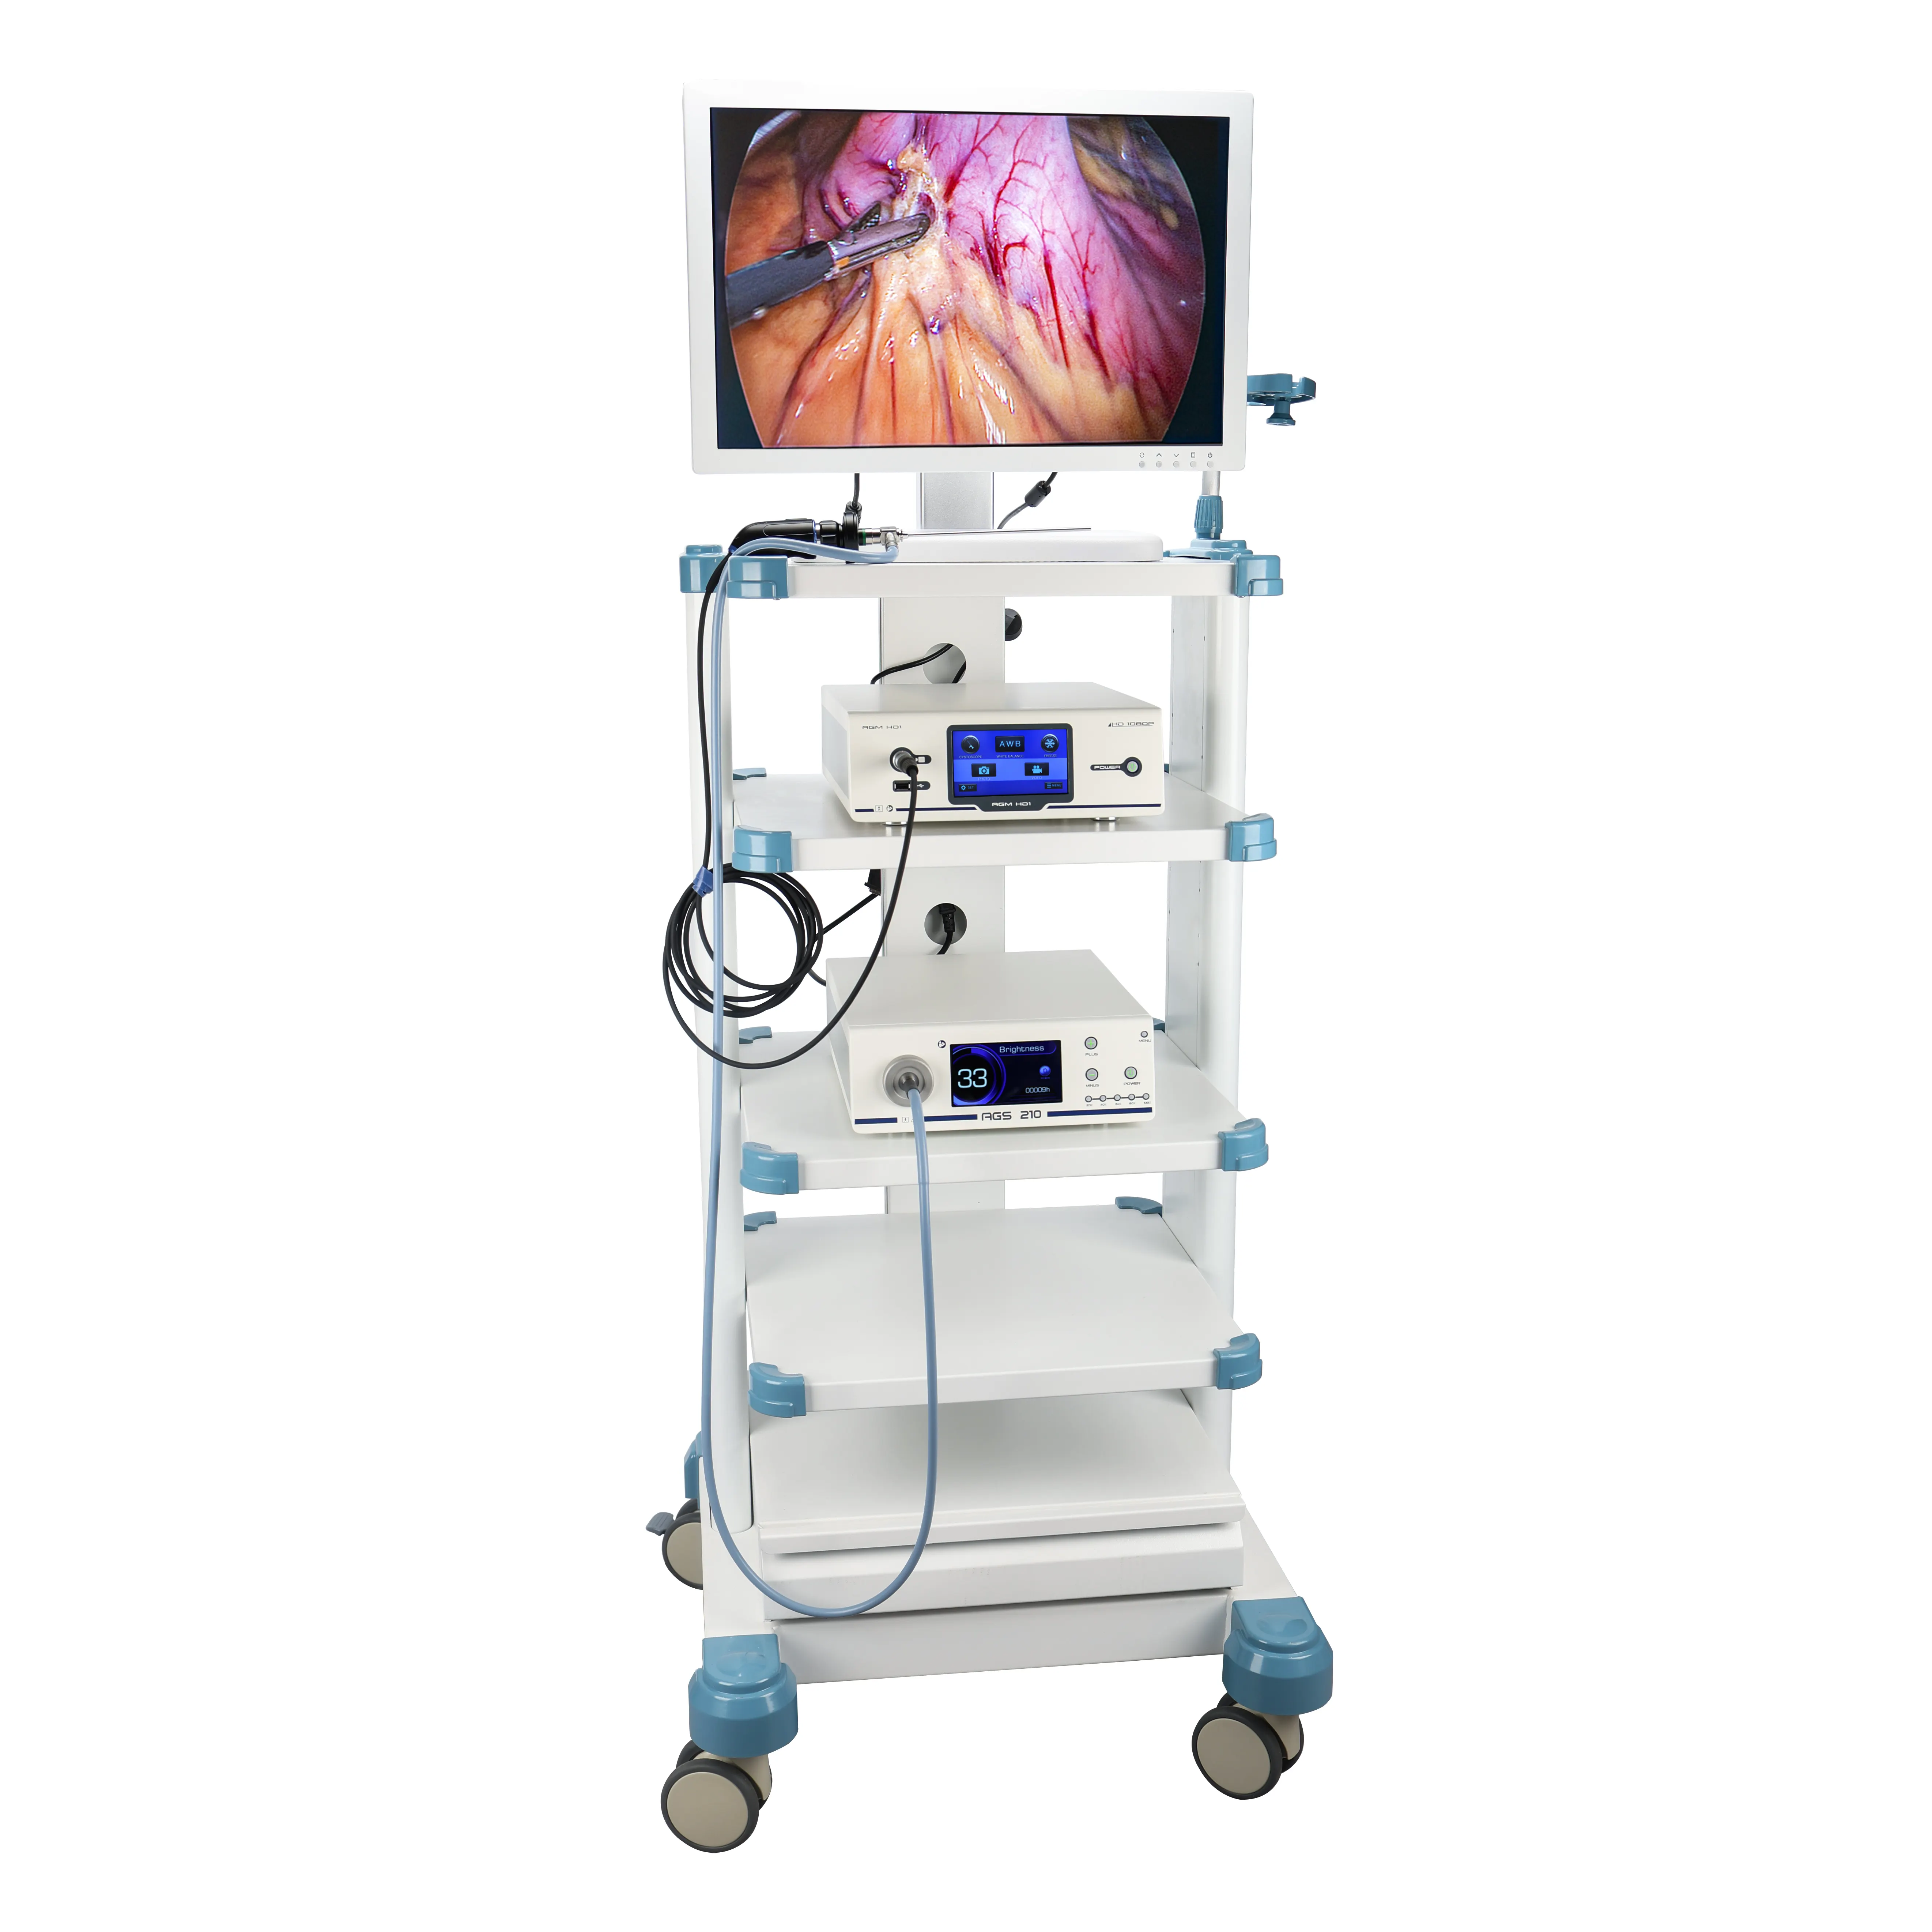 Prezzo di fabbrica Full HD laparoscopia torre del Set completo con strumenti e dispositivi laparoscopici, sistema di telecamere endoscopio